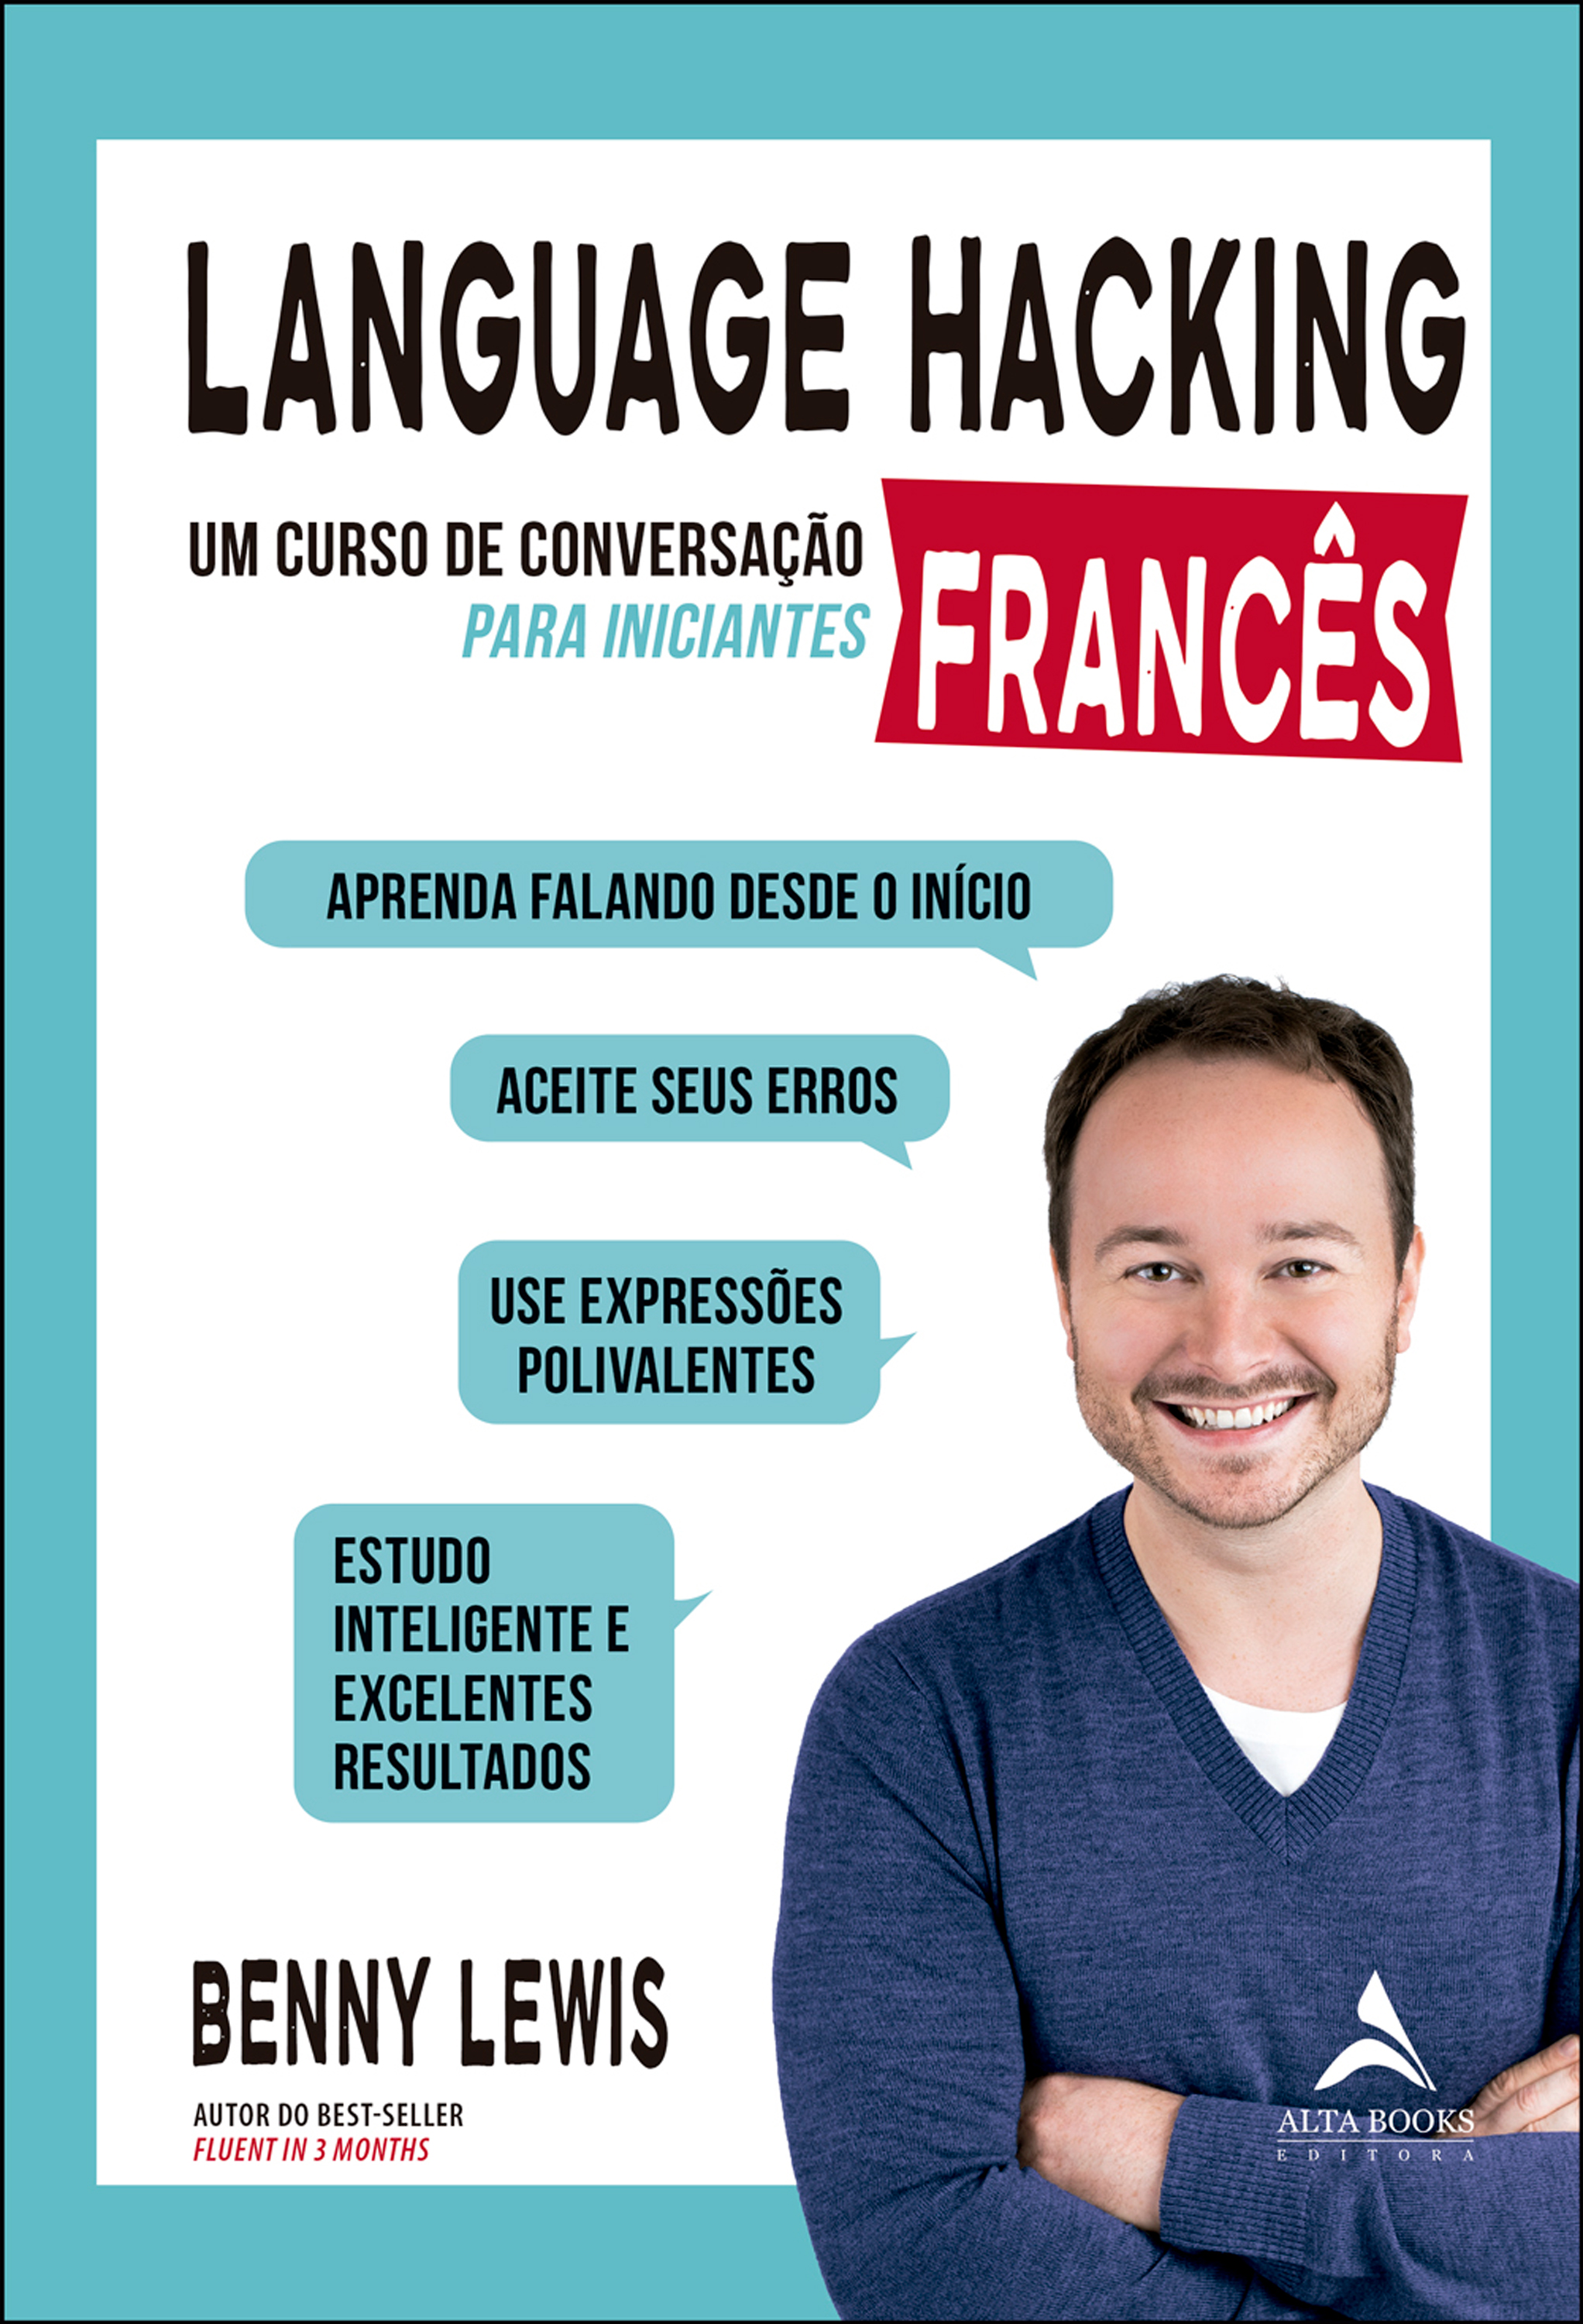 Language hacking - Francês